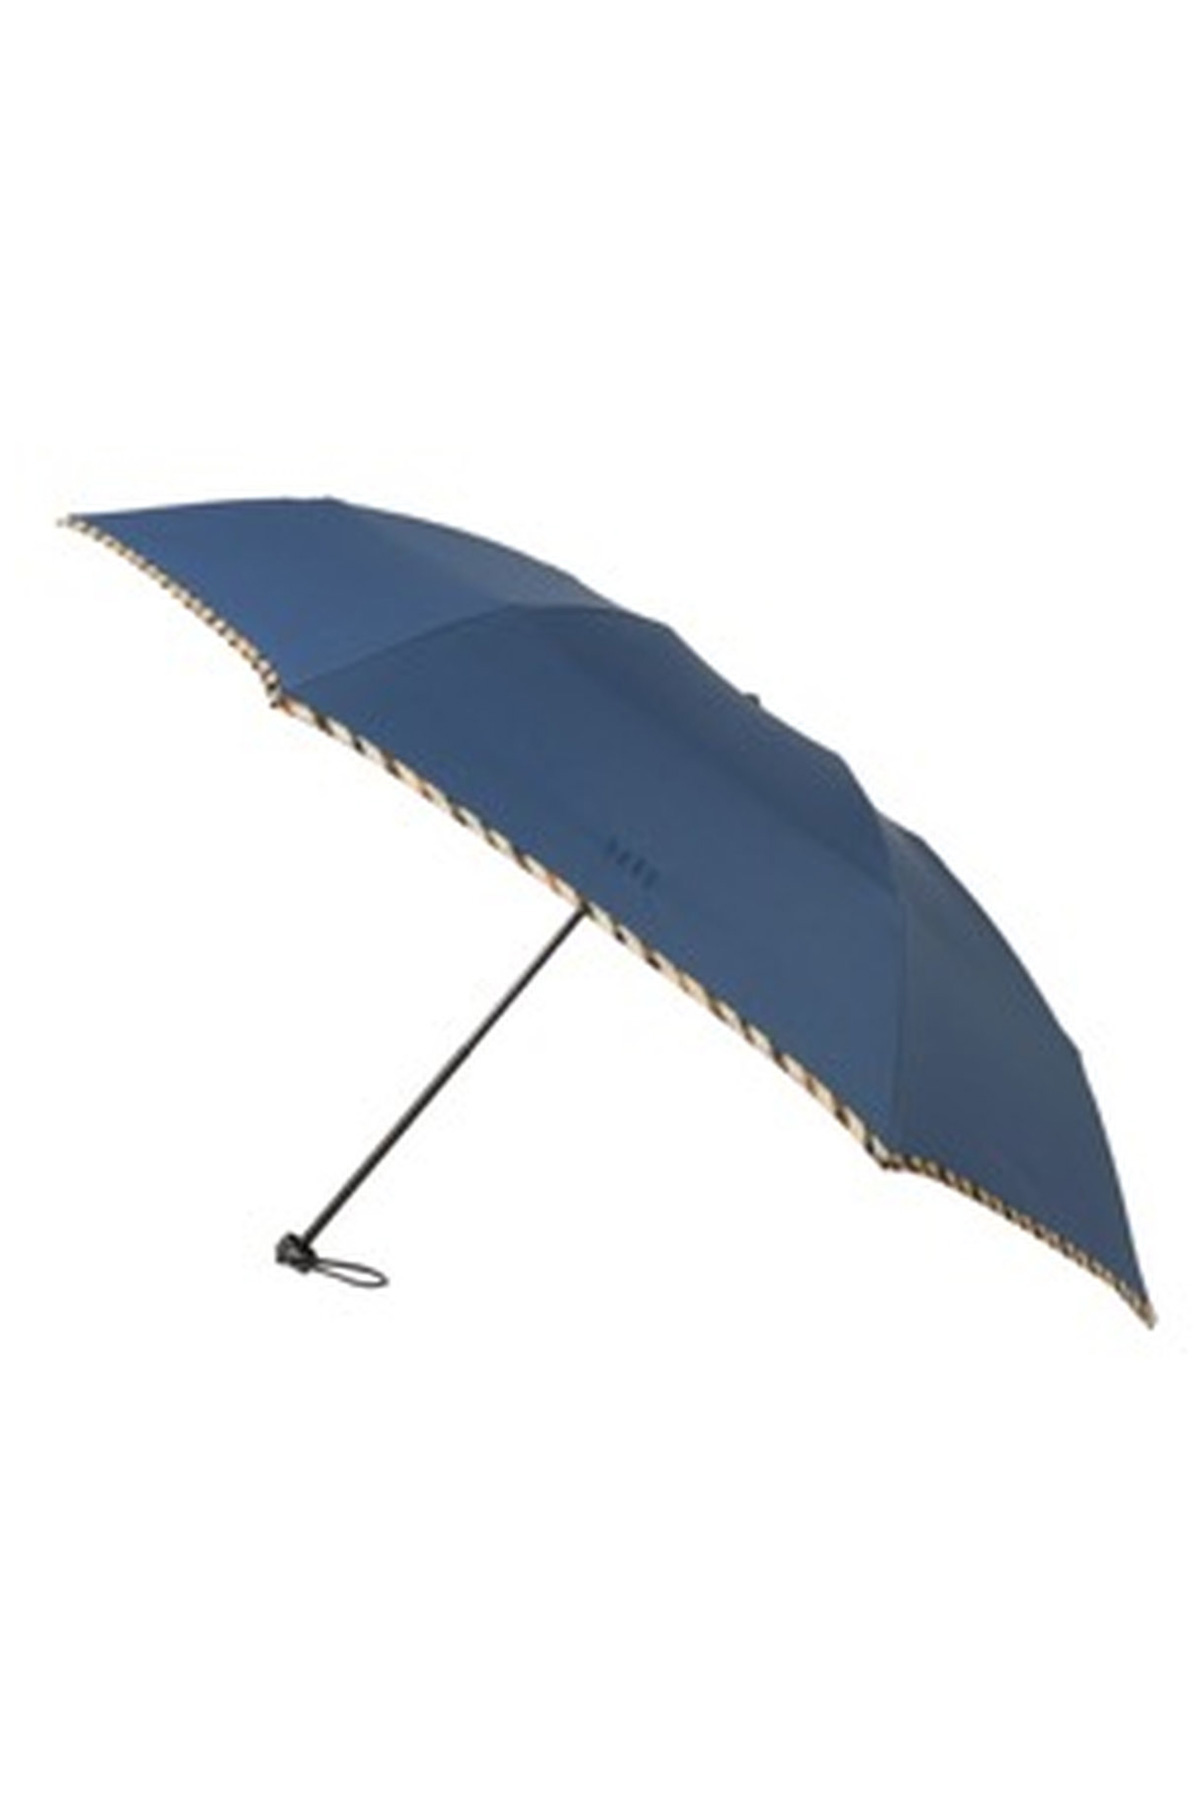 【紳士雨傘】折りたたみ傘無地パイピング 詳細画像 5